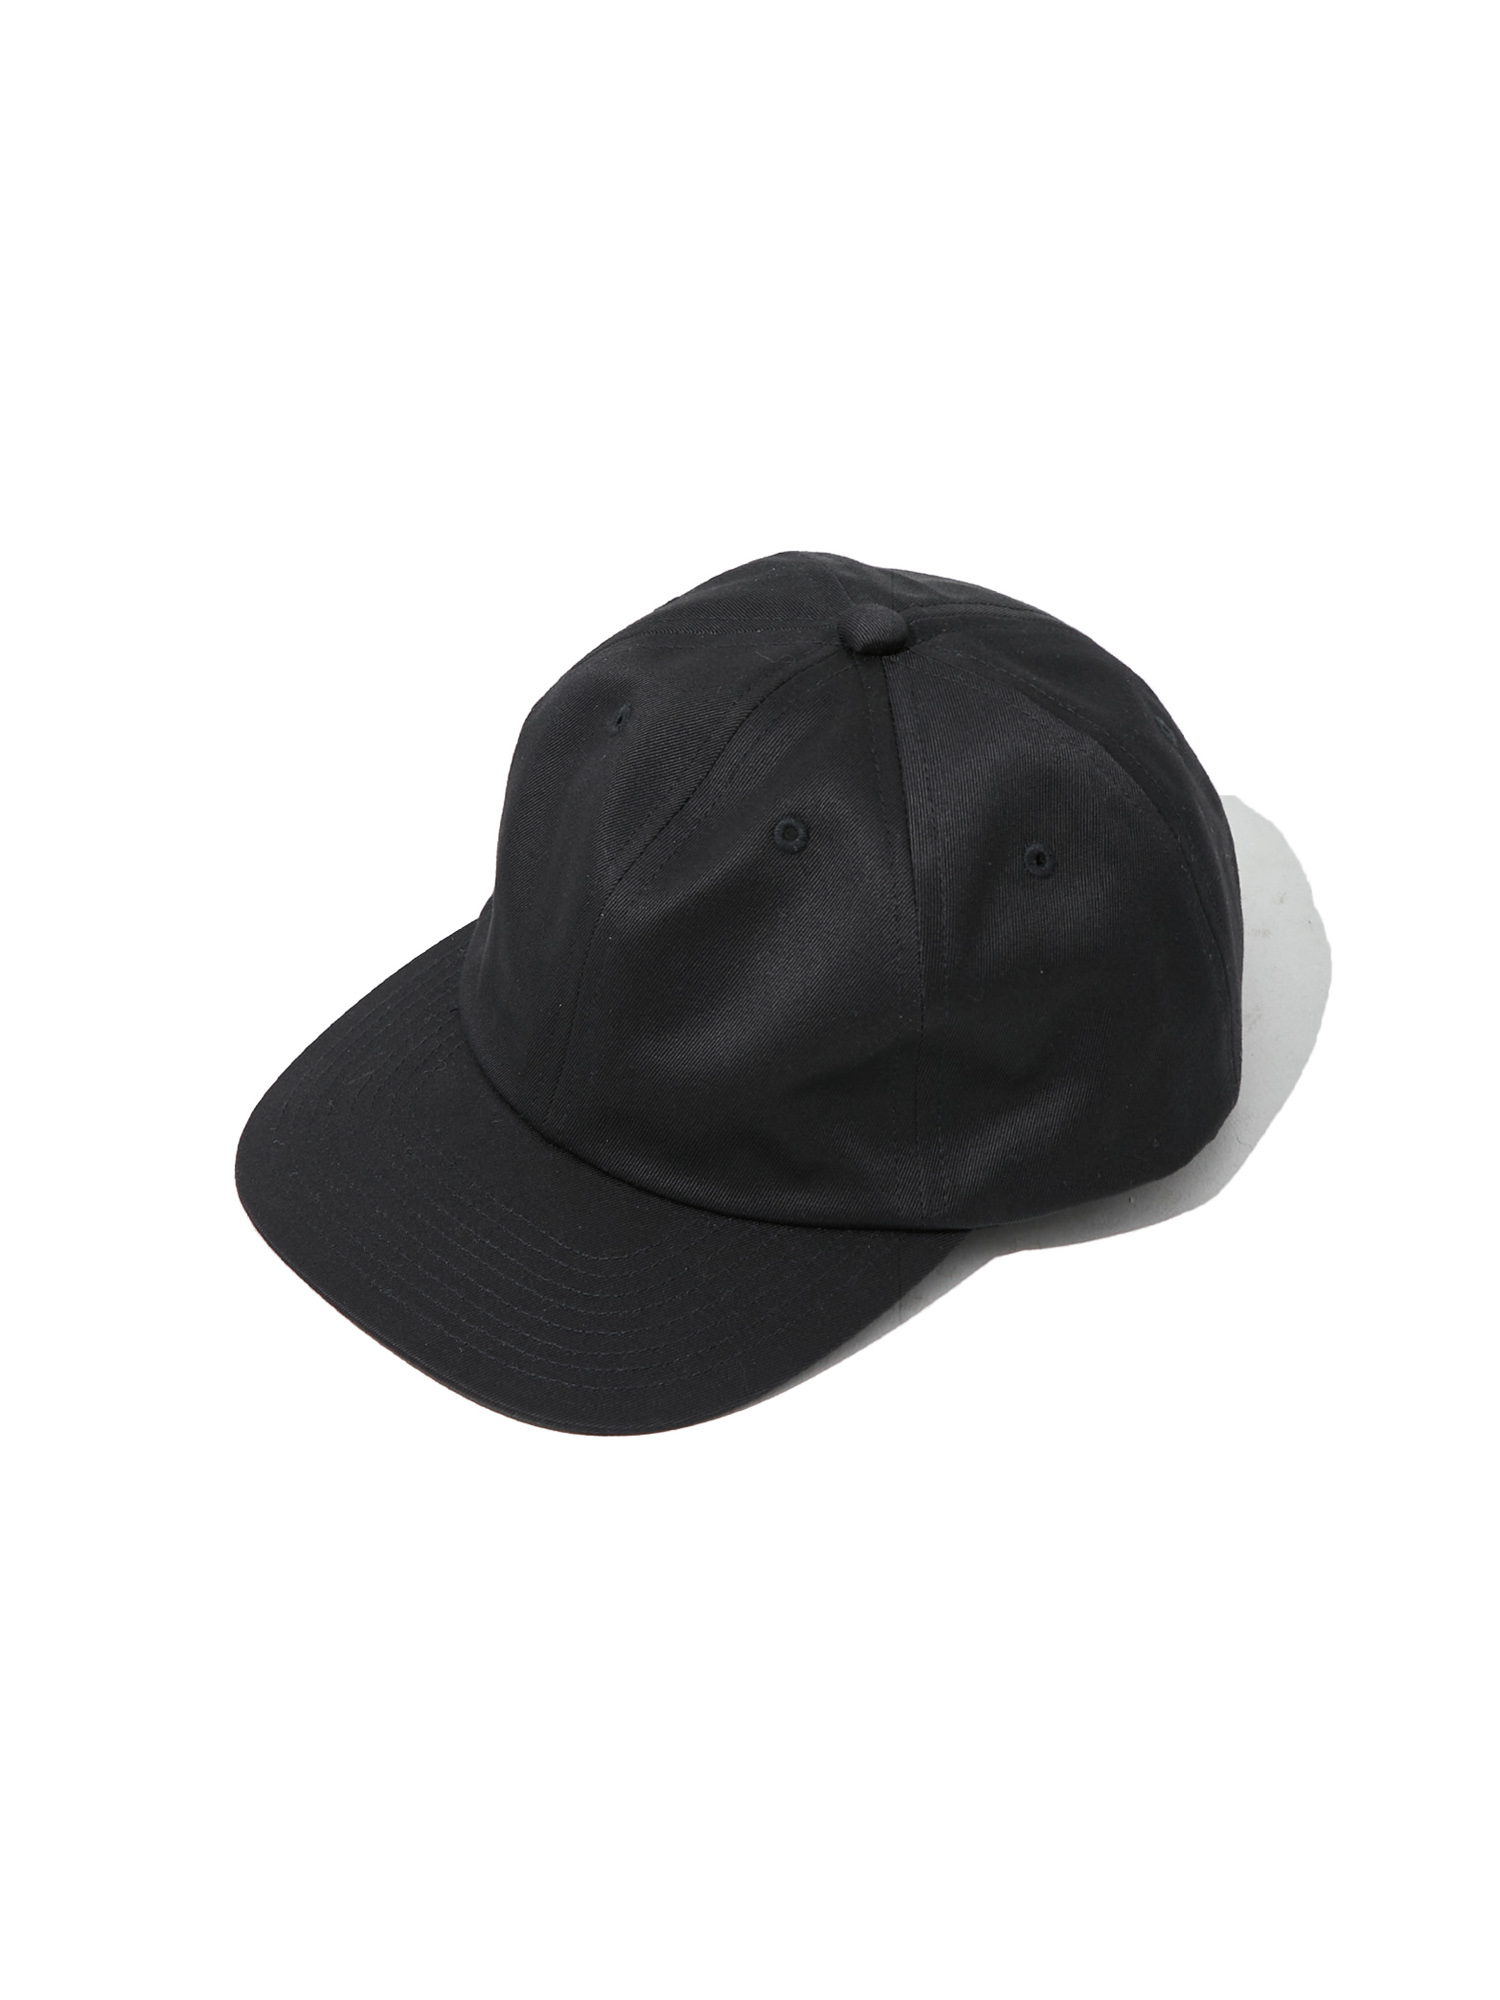 WEST POINT 6P CAP (BLACK)